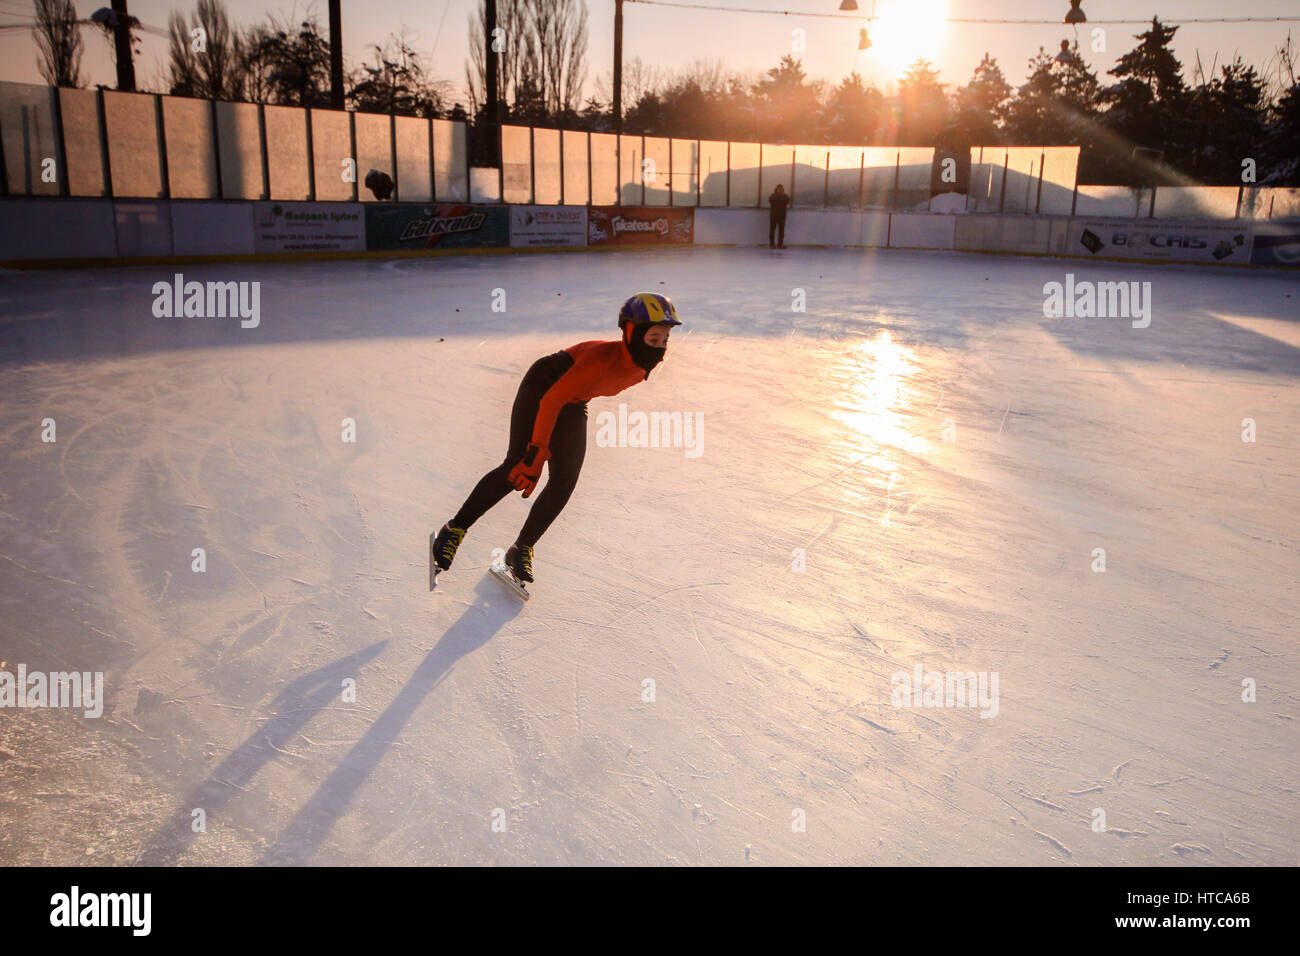 Persona patinaje sobre hielo fotografías e imágenes de alta resolución -  Página 3 - Alamy